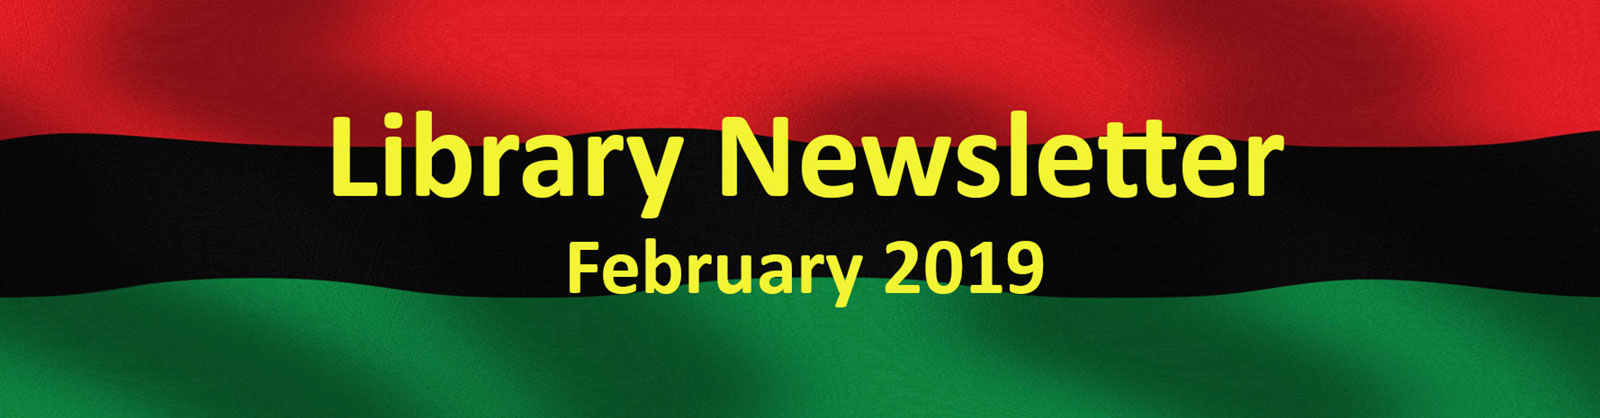 Library Newsletter - February 2019